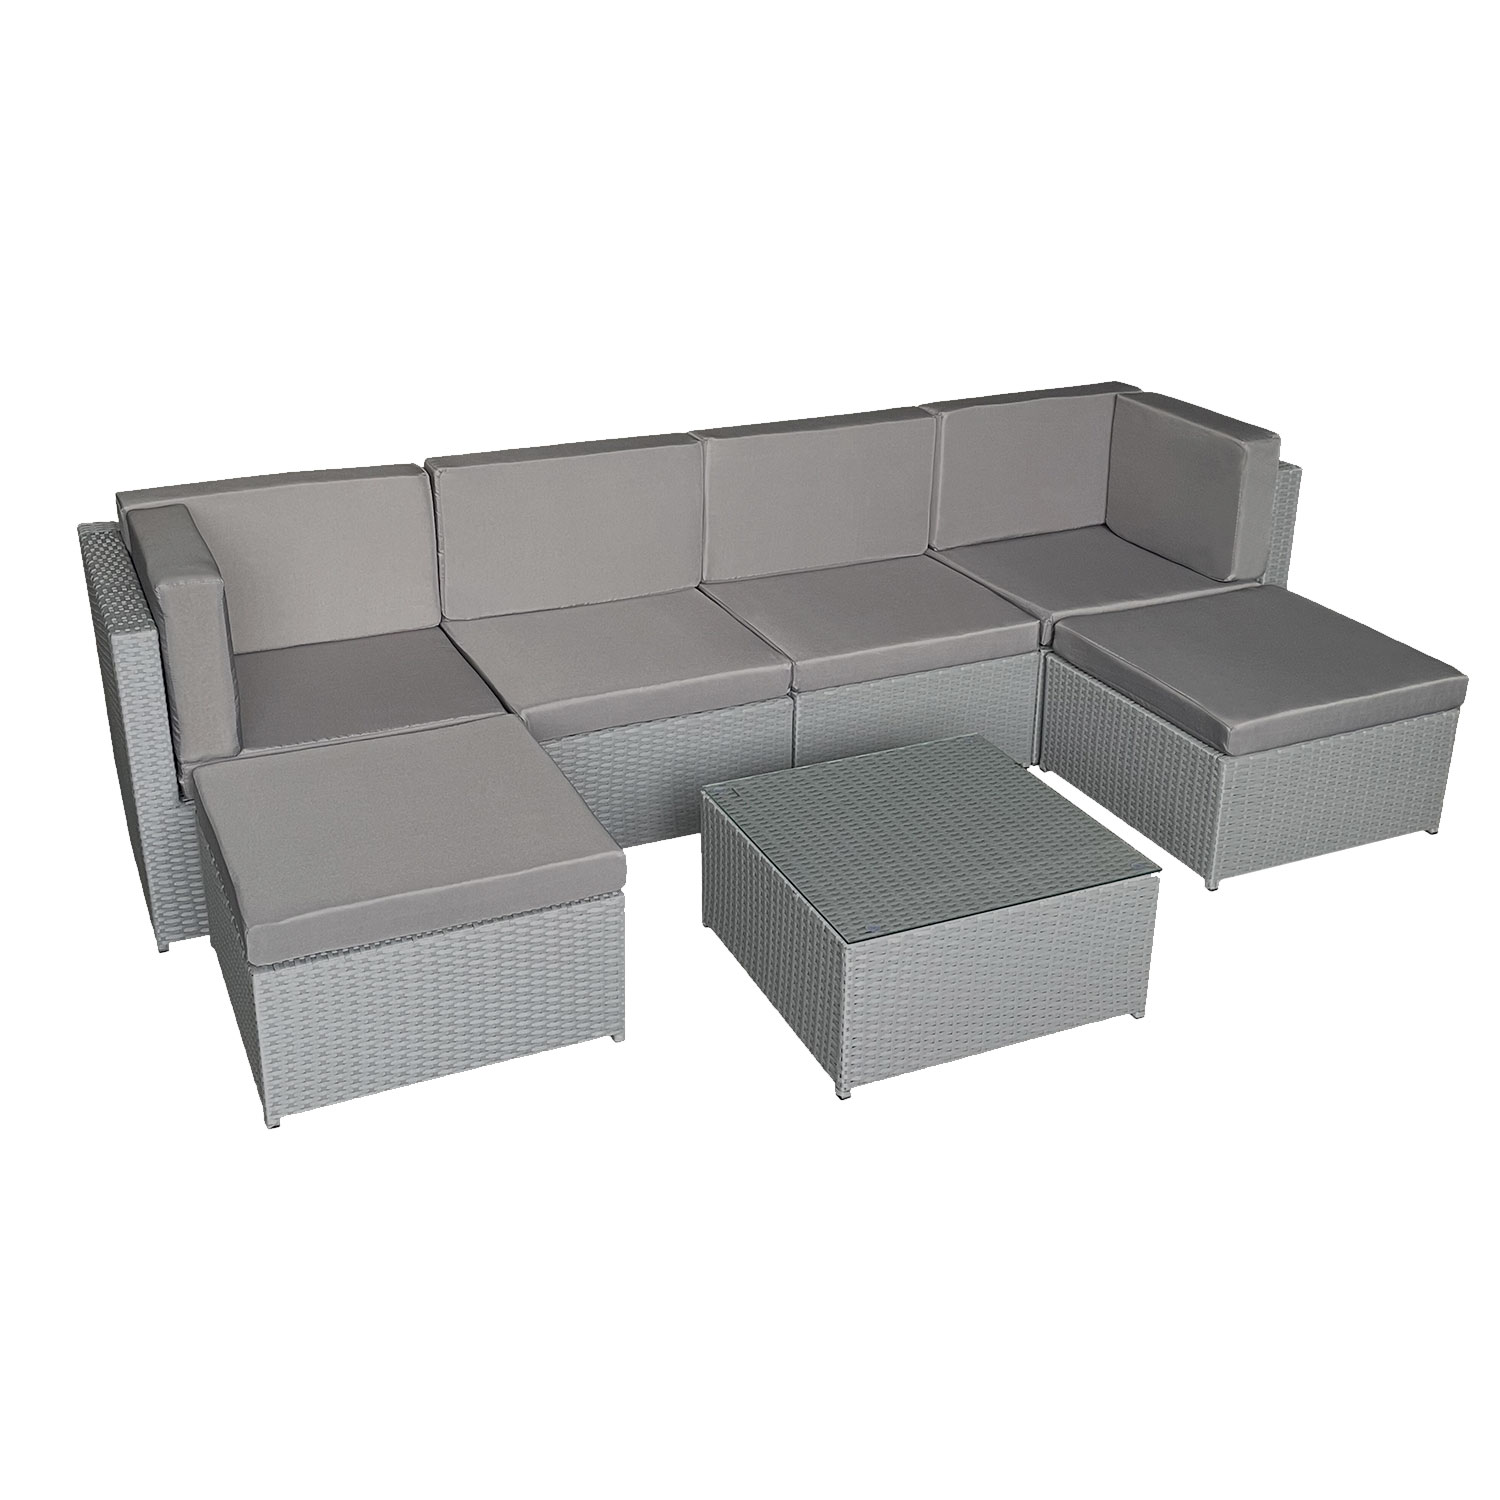 BONIFACIO set di mobili da giardino in resina intrecciata grigia 6 posti - cuscino grigio